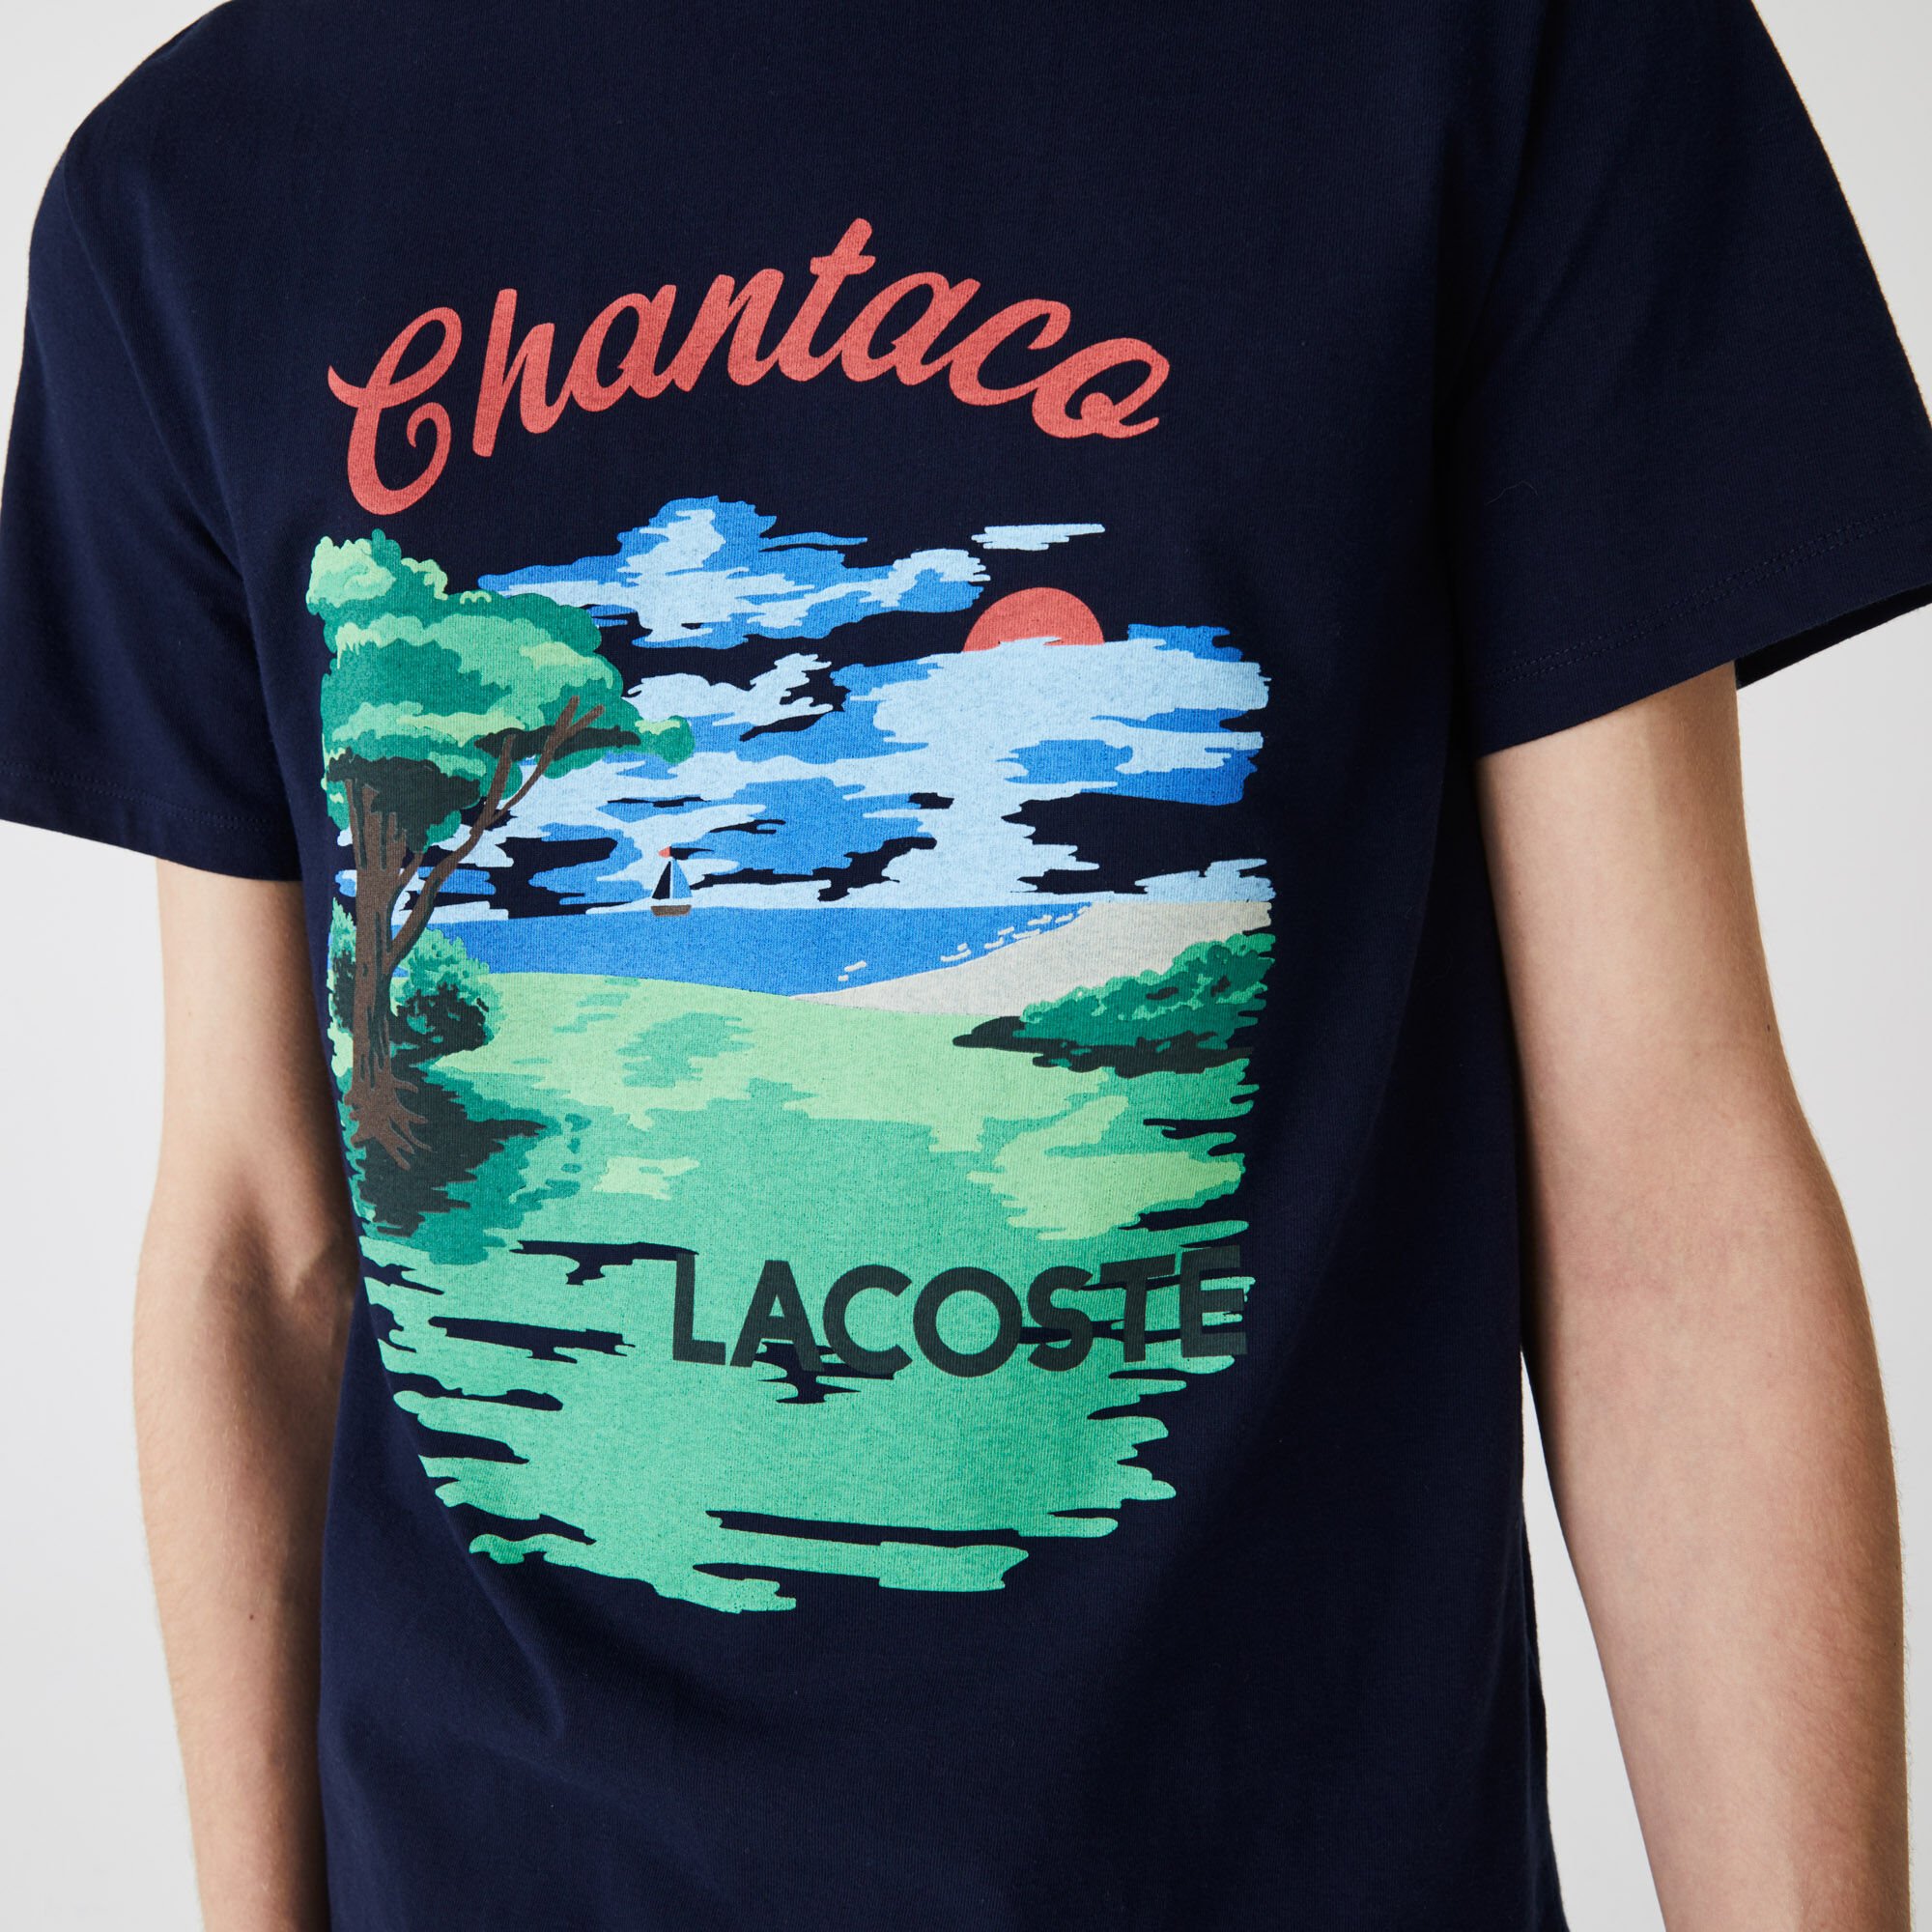 Men’s Crew Neck Landscape Print Cotton T-shirt